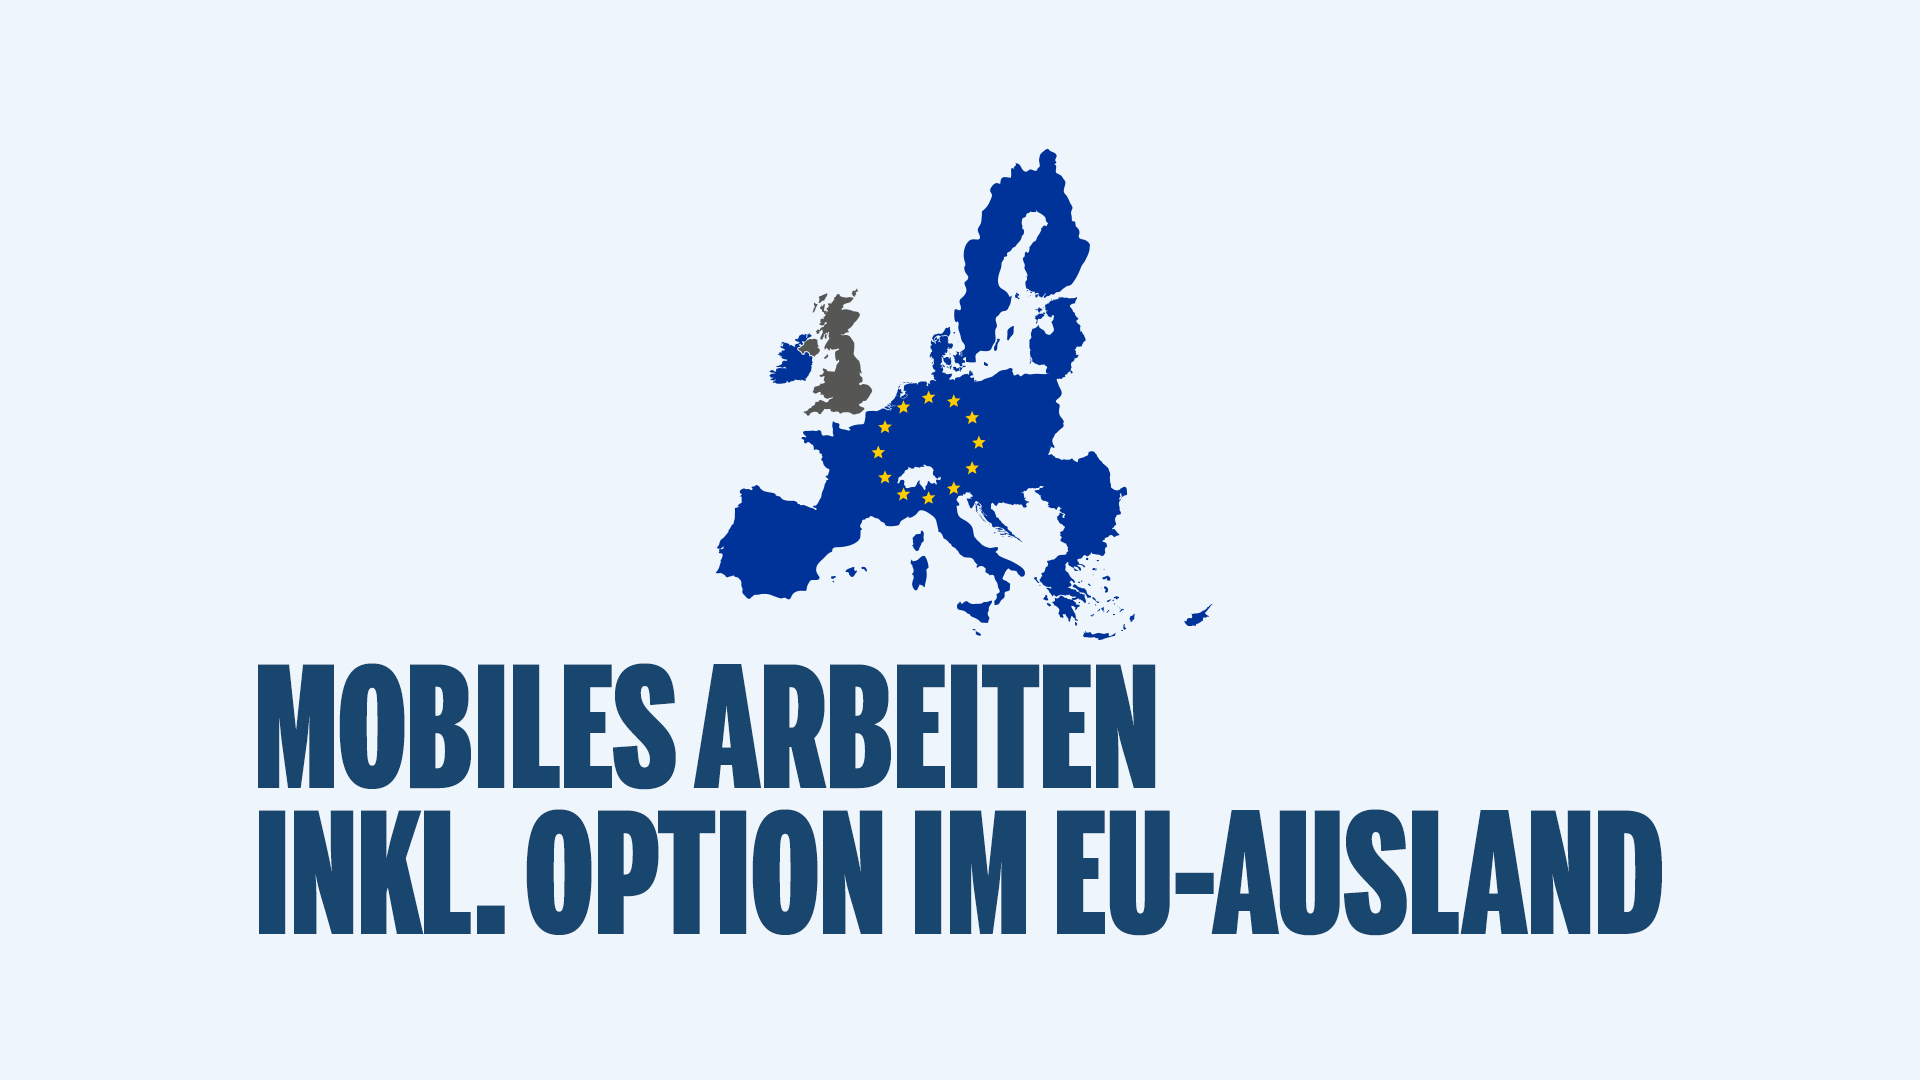 Innerhalb Deutschlands kannst du bei uns bis zu 80% im Mobile Office arbeiten - davon auch maximal zwei Wochen im EU-Ausland. 